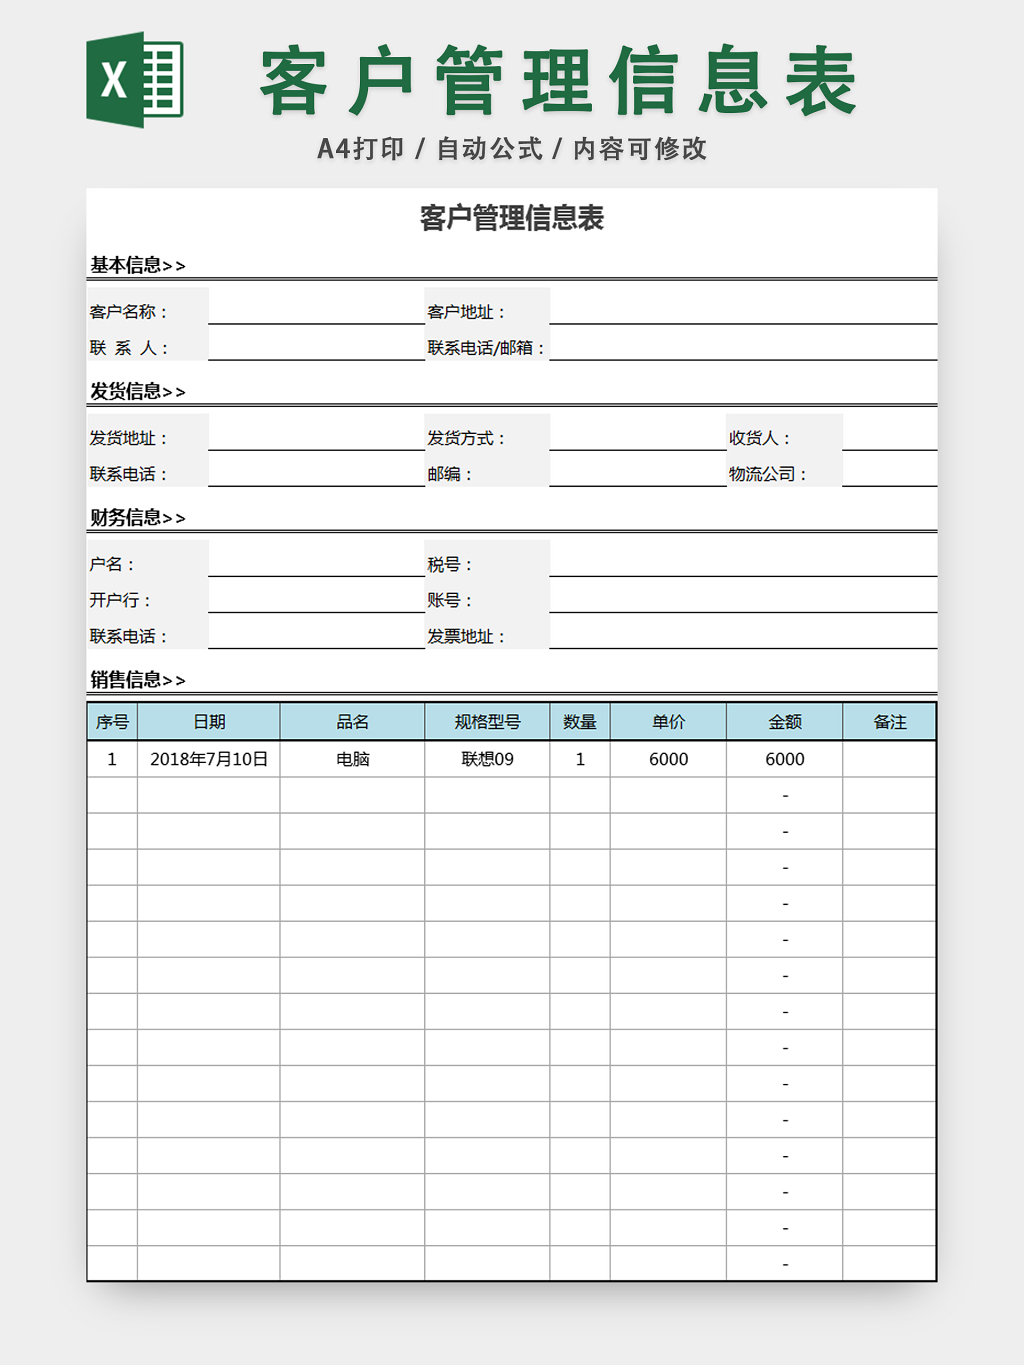 行政档案信息管理客户信息管理表